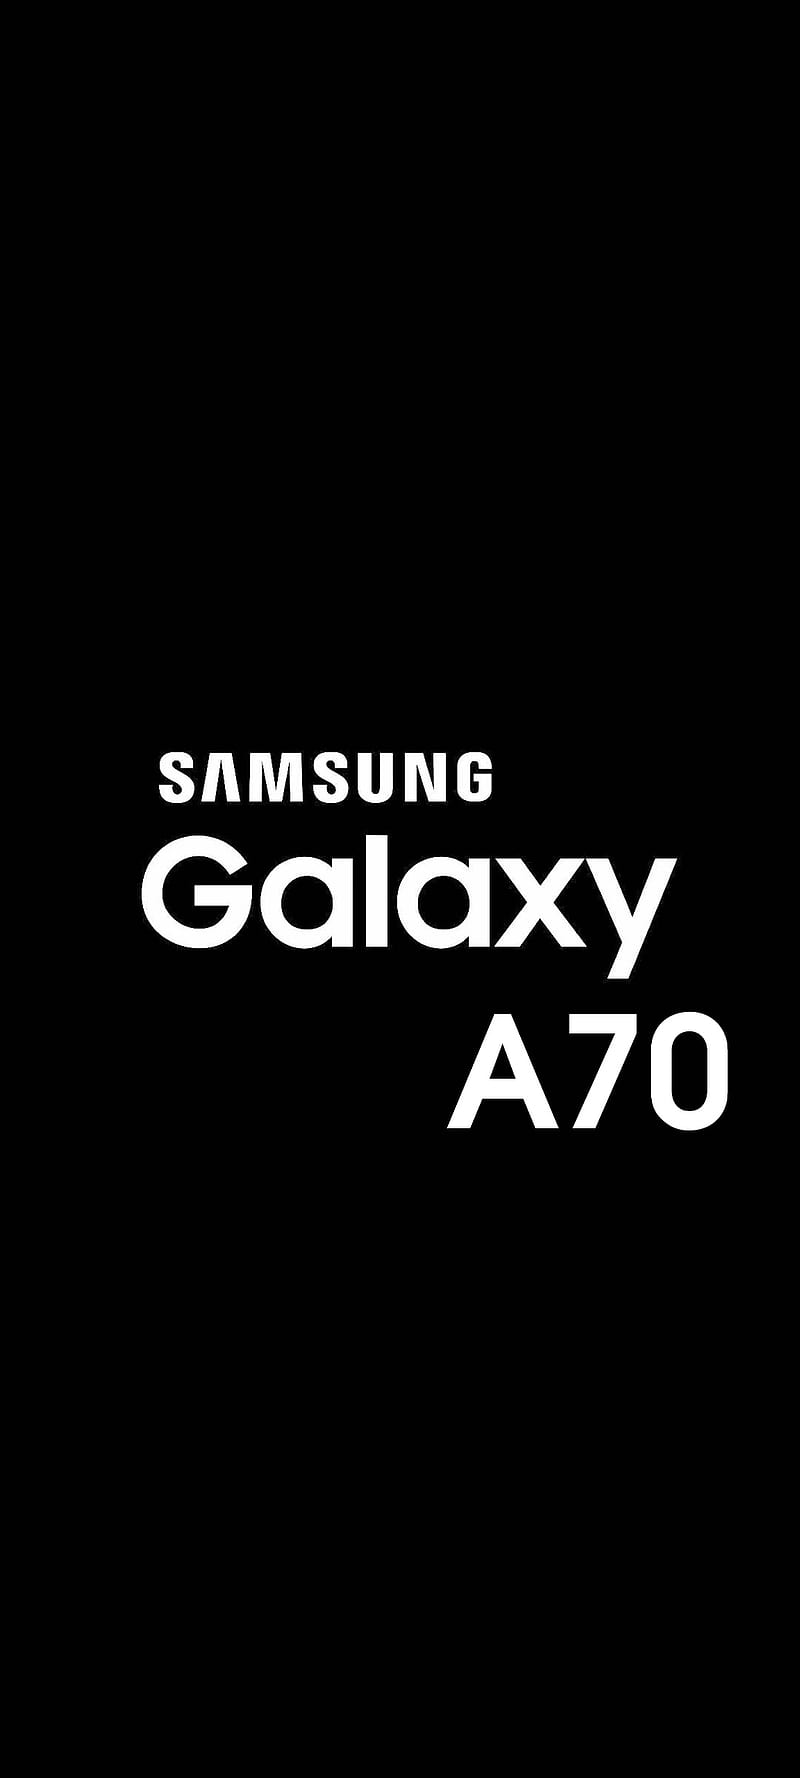 Mời bạn tải về bộ hình nền Galaxy A70 đẹp tuyệt tác giai nhân  Hoàng Hà  Mobile